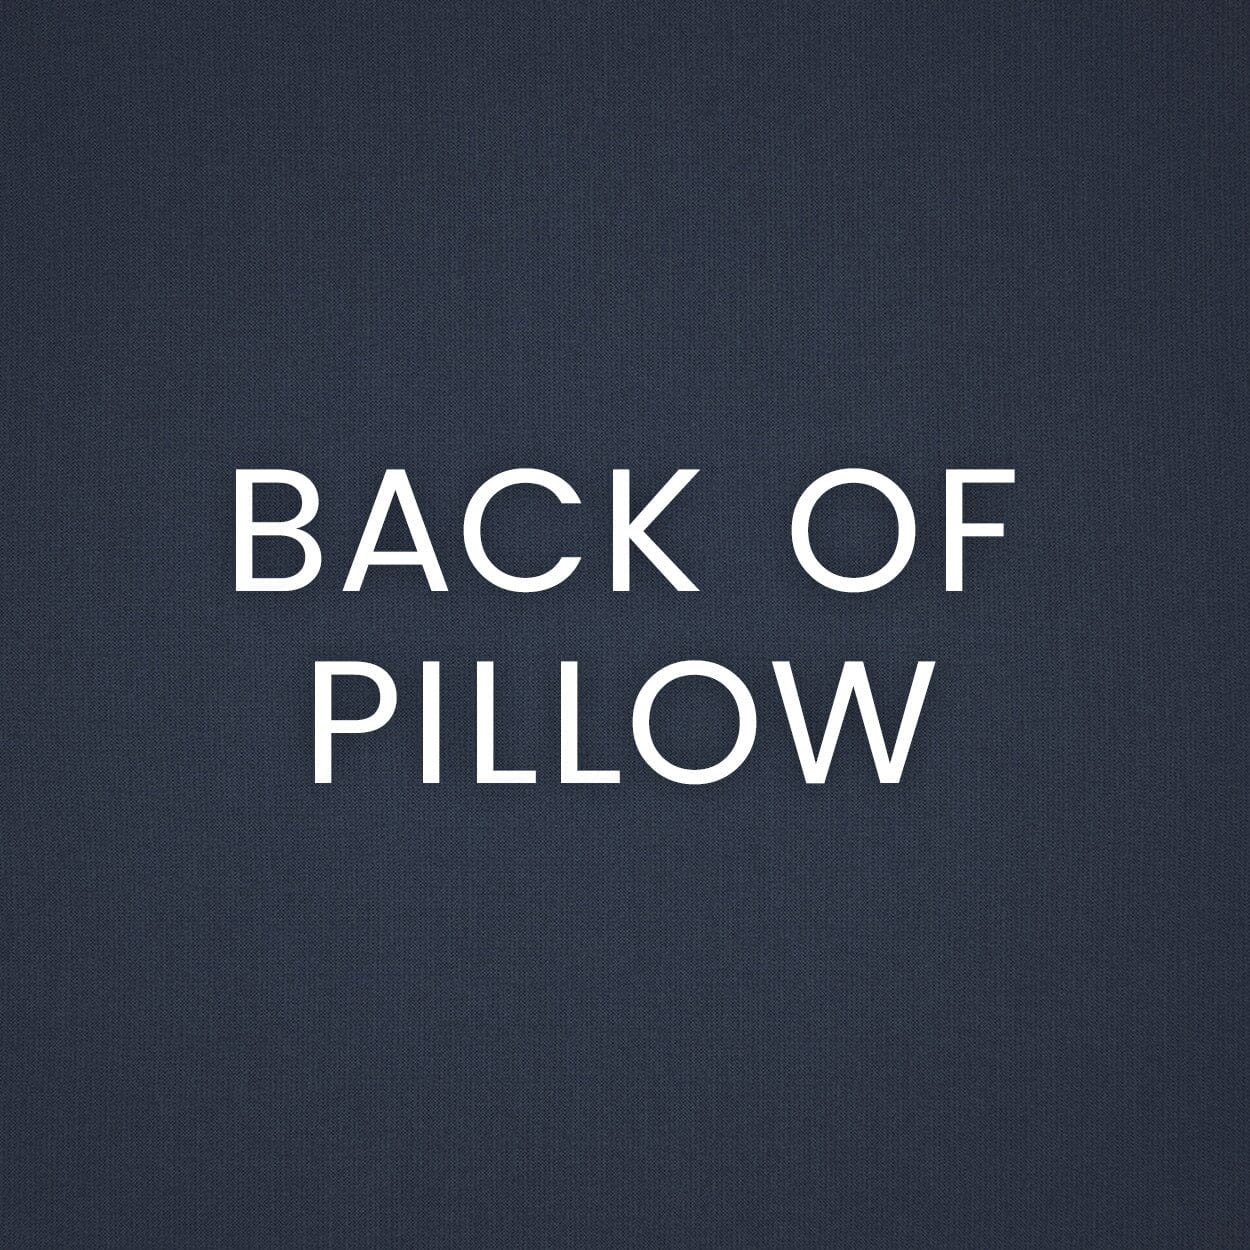 D.V. Kap 22" x 22" Outdoor Throw Pillow | Savvy Pillows D.V Kap Outdoor